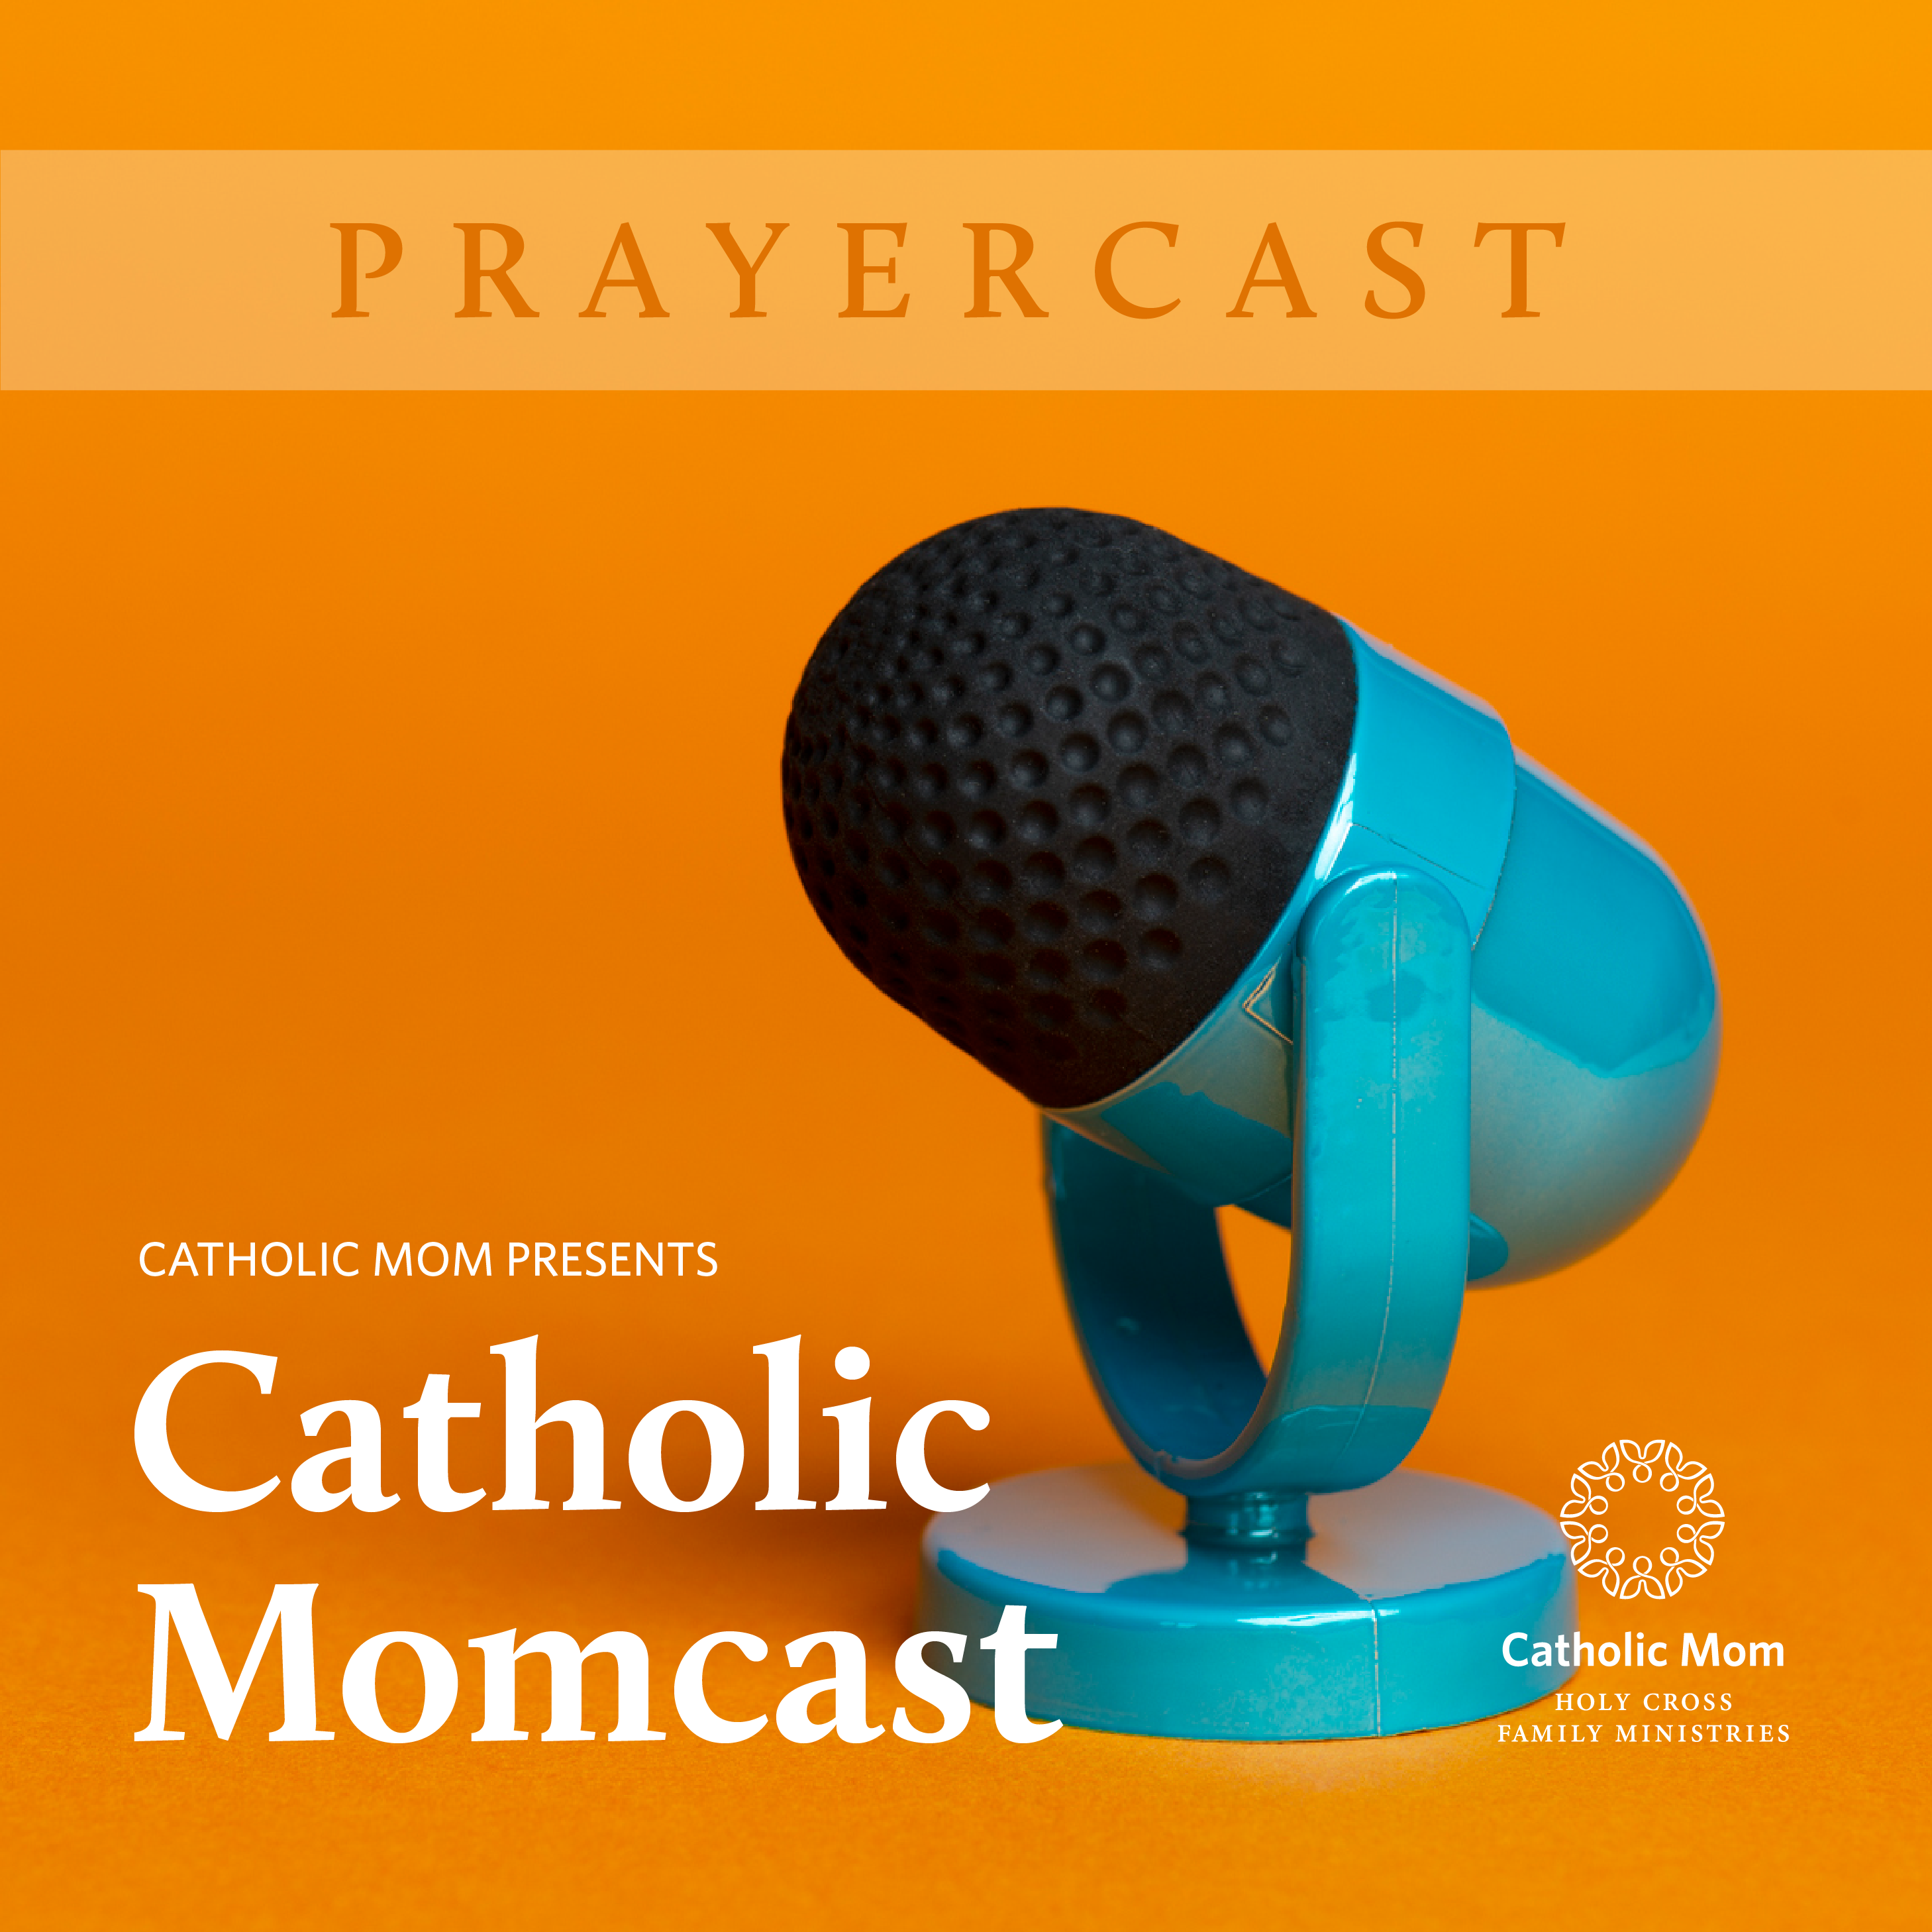 Prayer cast_Momcast-4